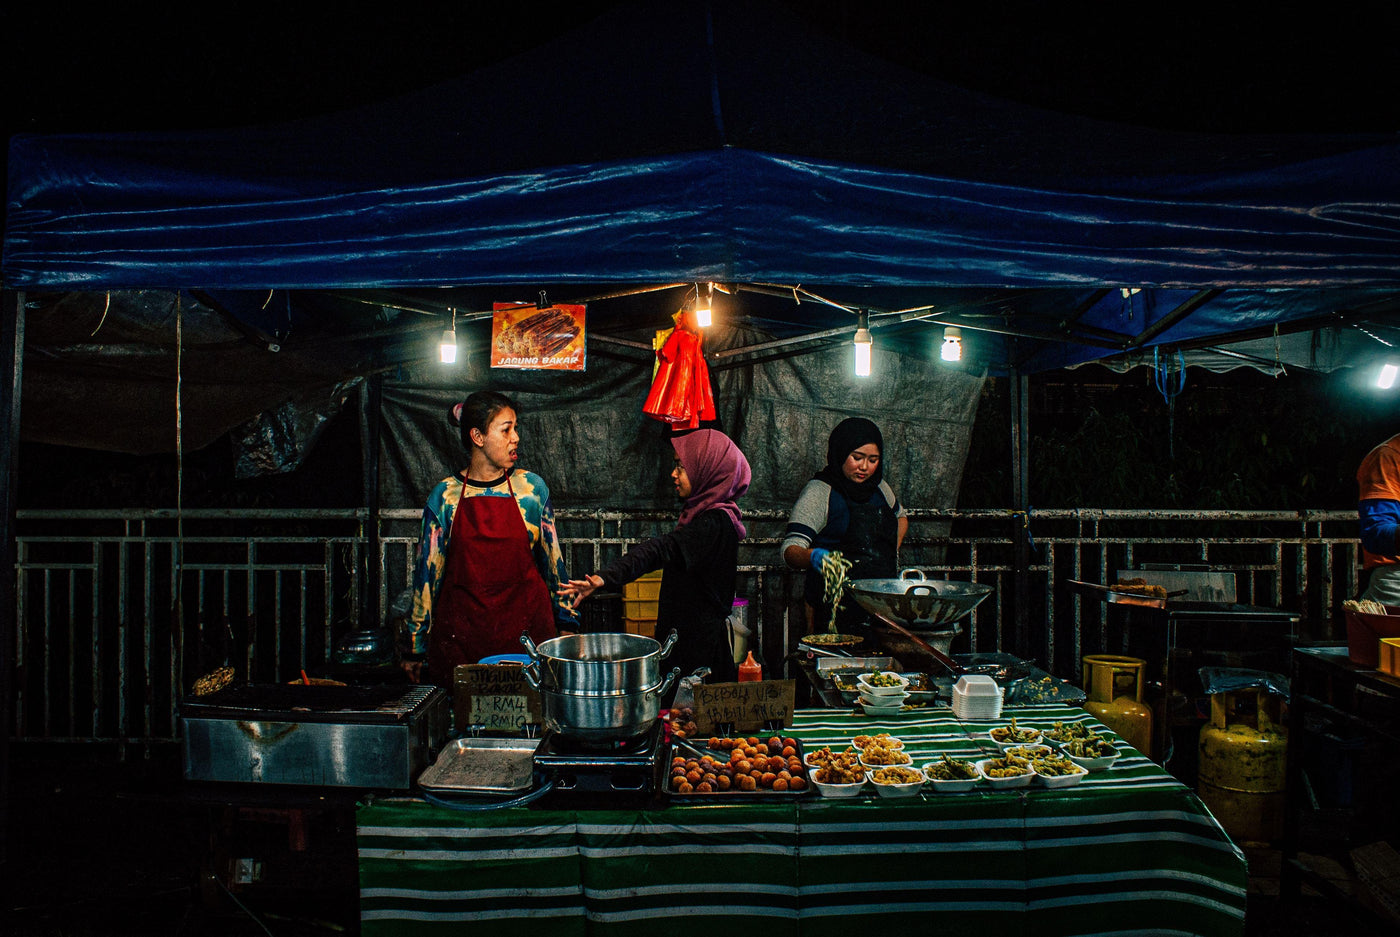 Rahsia peniaga pasar malam boleh dapat jualan laku keras dan habis berniaga awal - Saiful Nang Academy